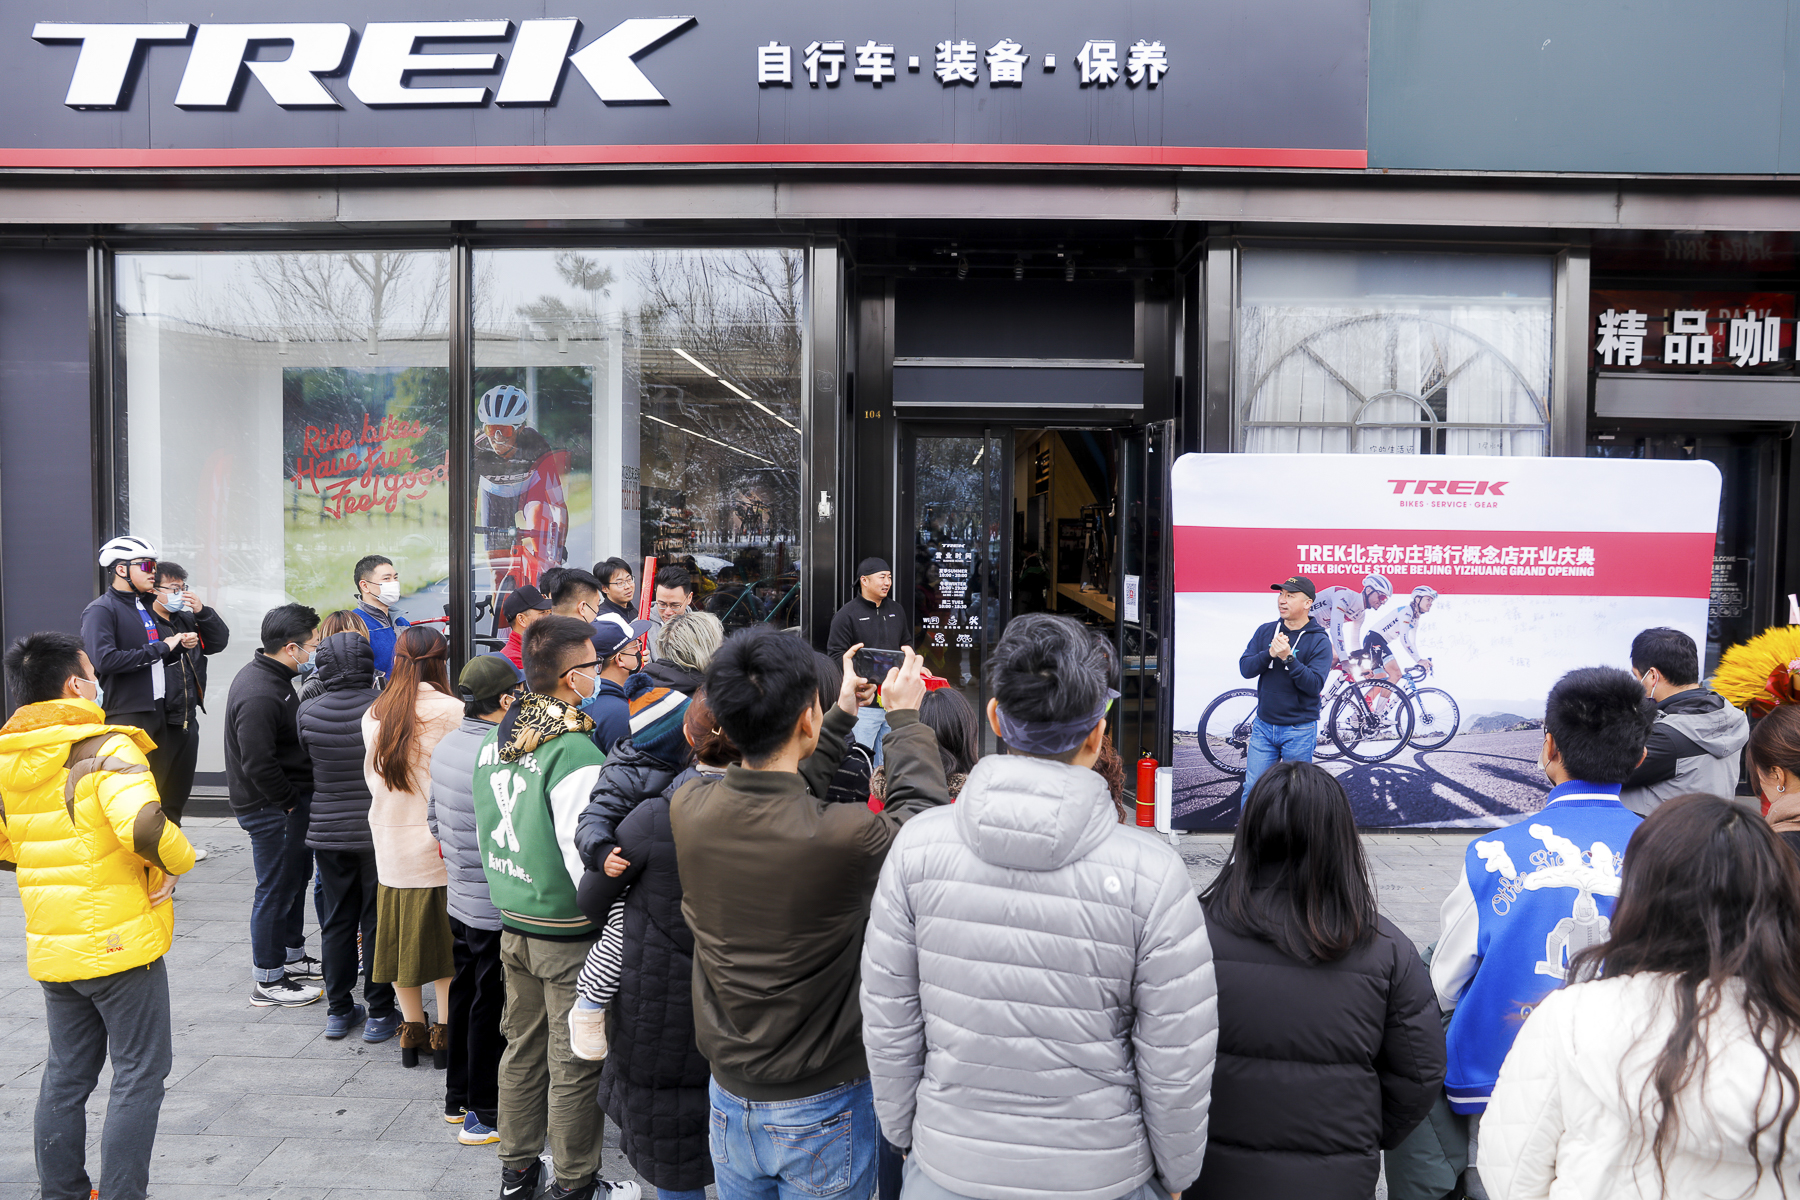 直营店负责人Miles表示：很高兴在北京的南部亦庄经济开发区有这样的机会为广大车友服务，希望大家一起享受骑行的乐趣.jpg